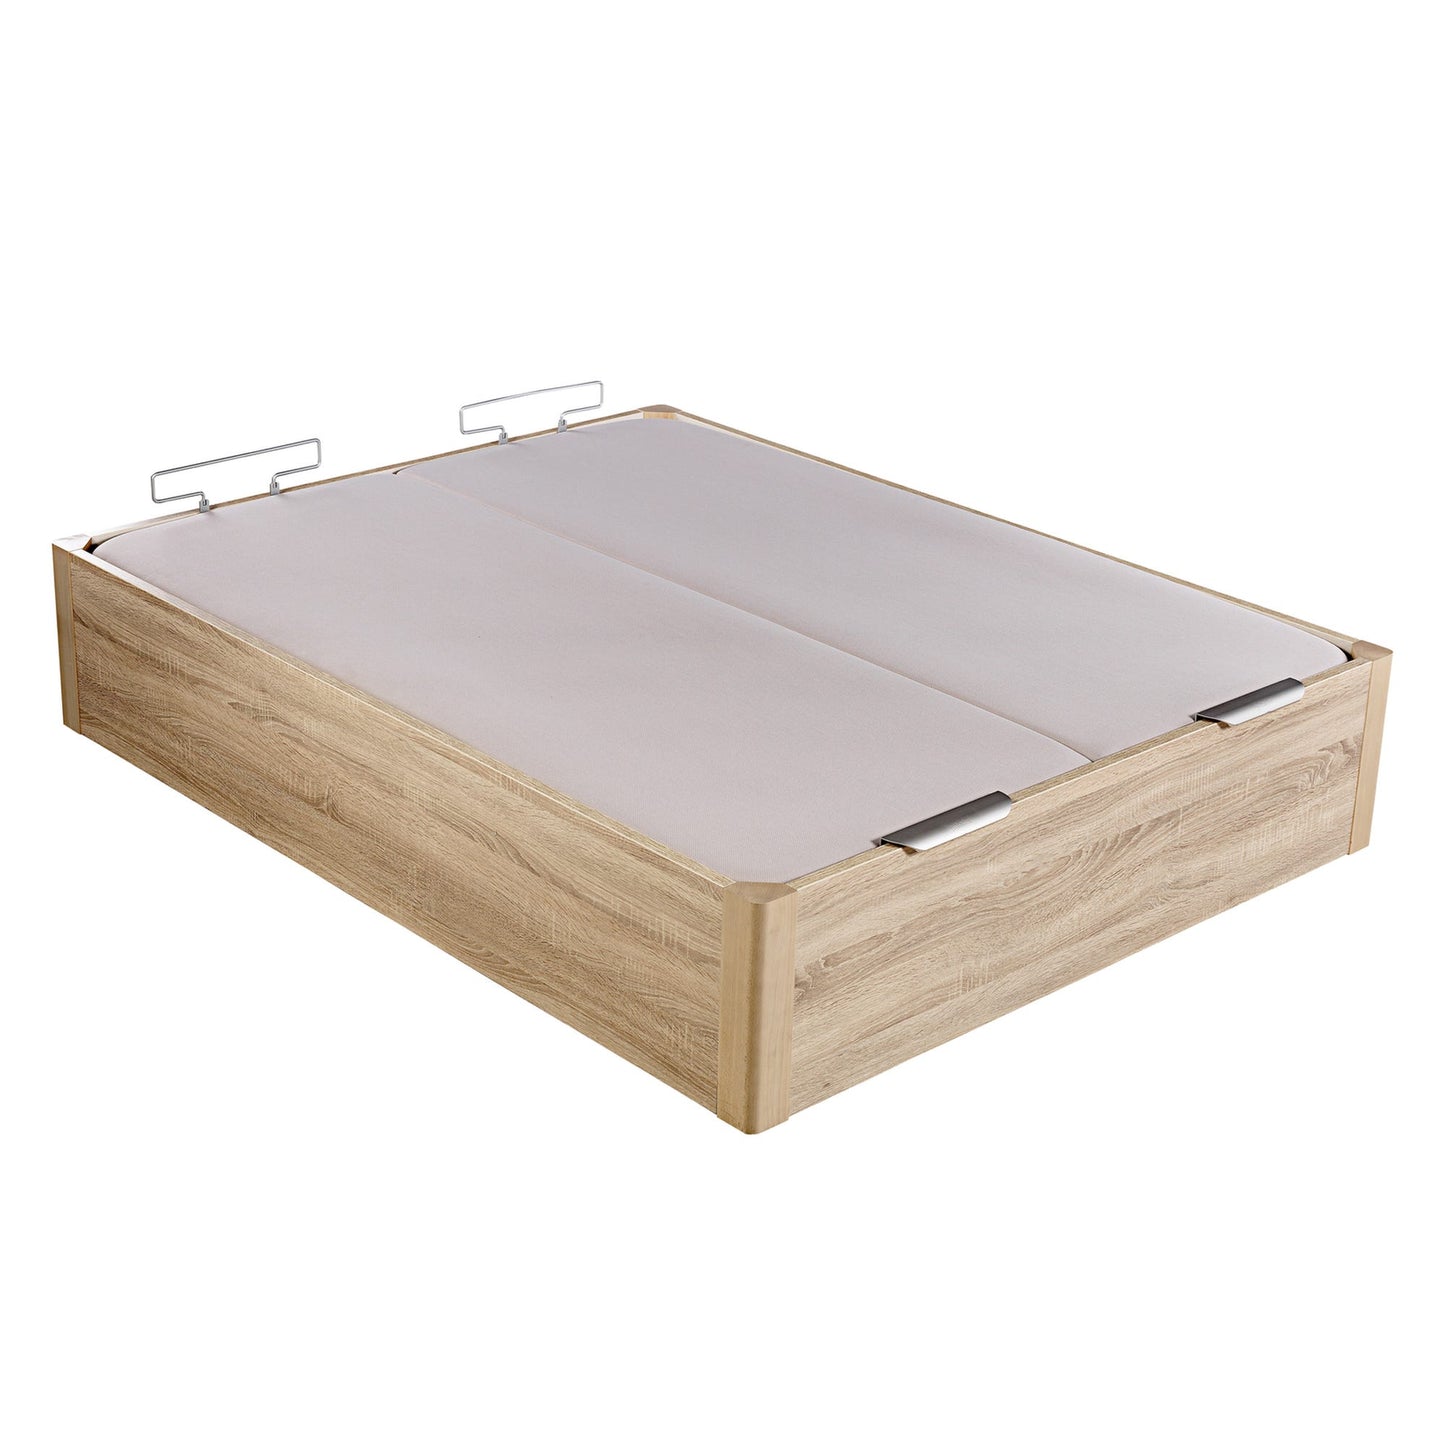 Canapé abatible de madera de alta capacidad tapa doble de color natural - DESIGN - 160x220